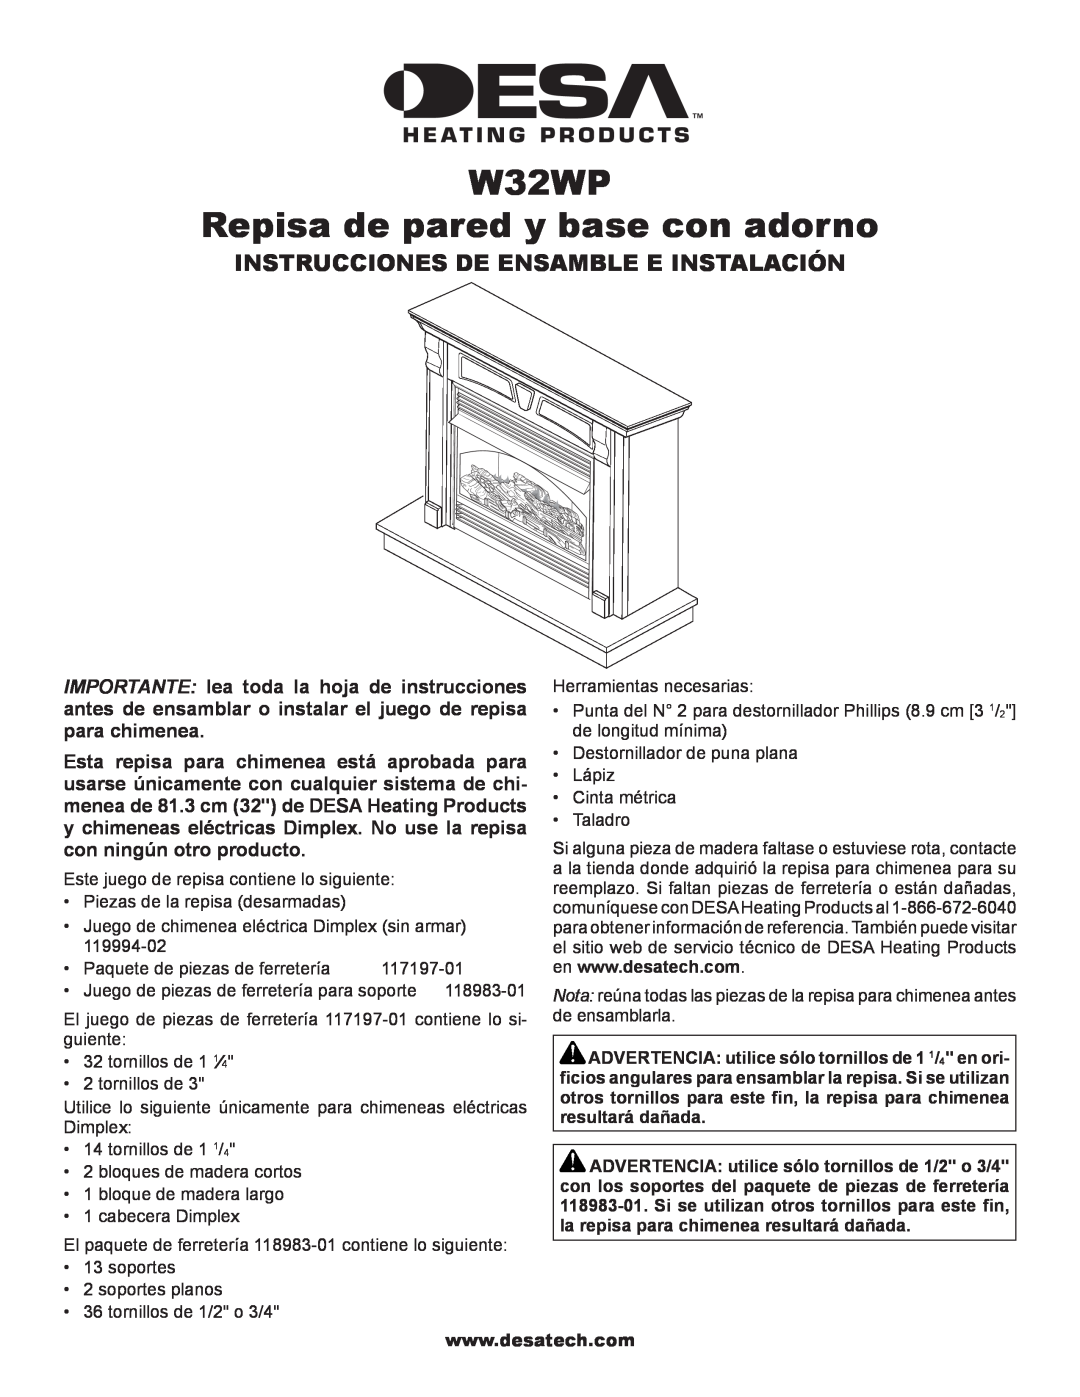 Desa installation instructions W32WP Repisa de pared y base con adorno, Instrucciones De Ensamble E Instalación 